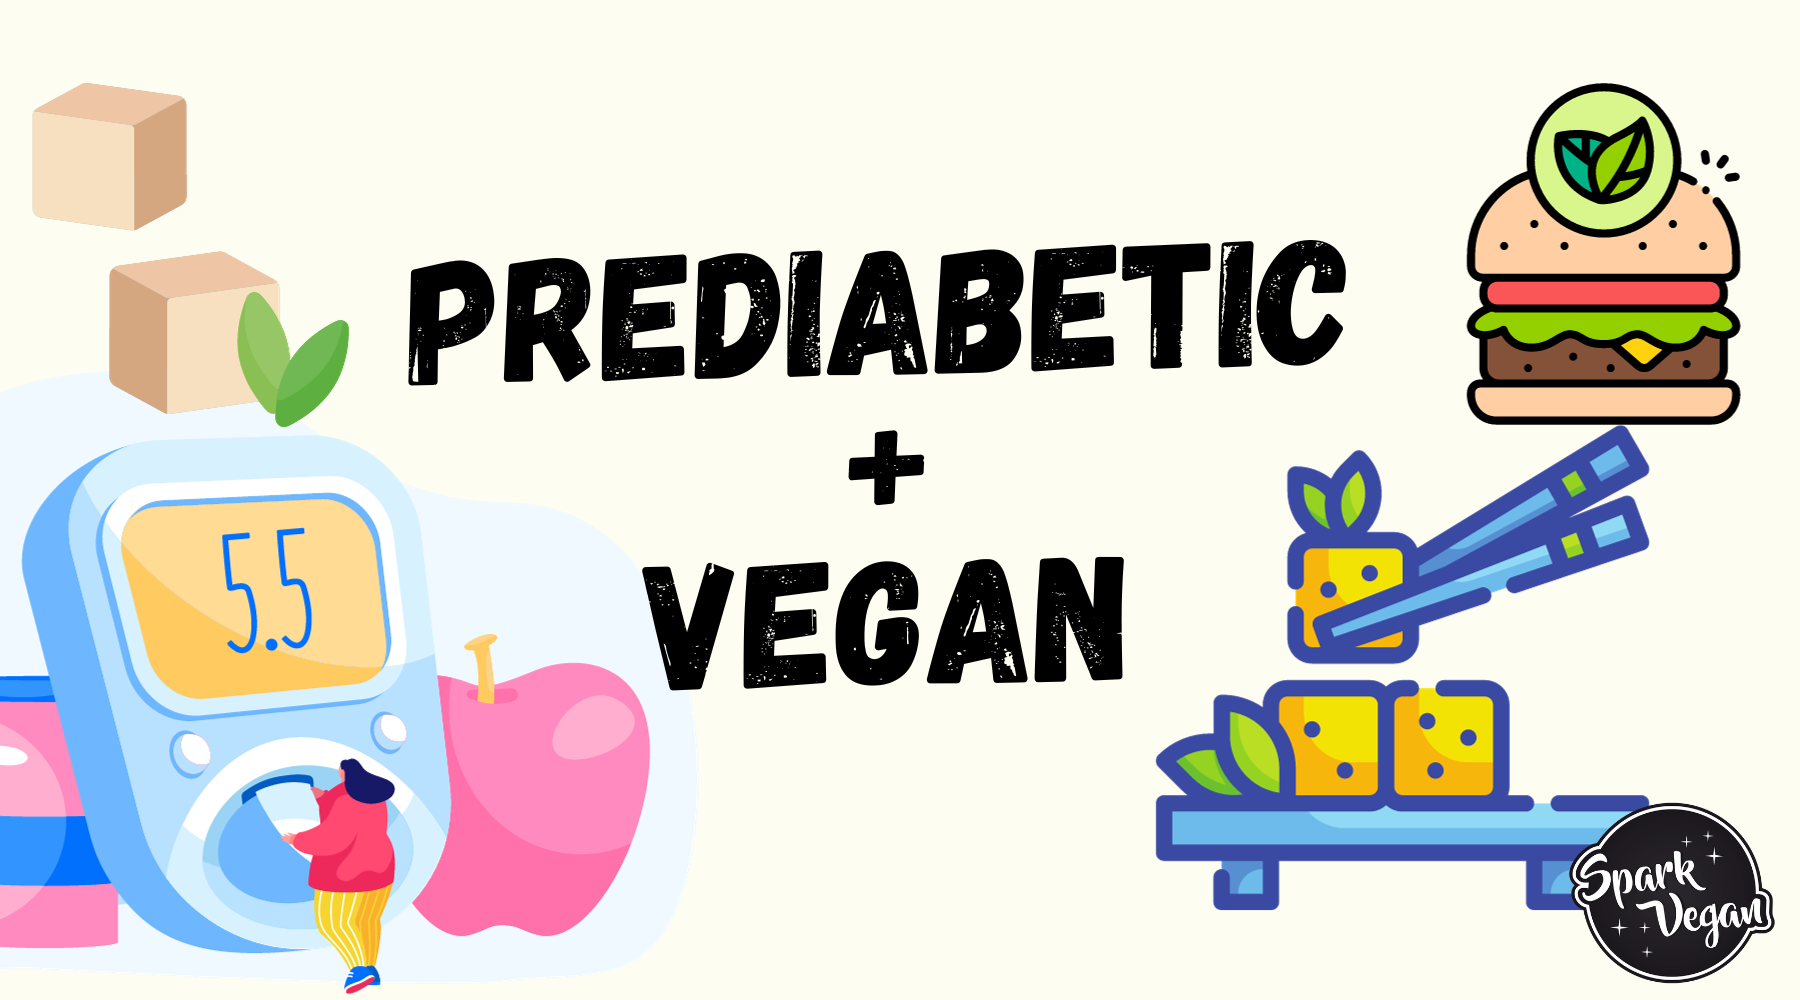 Being Vegan and Diabetic